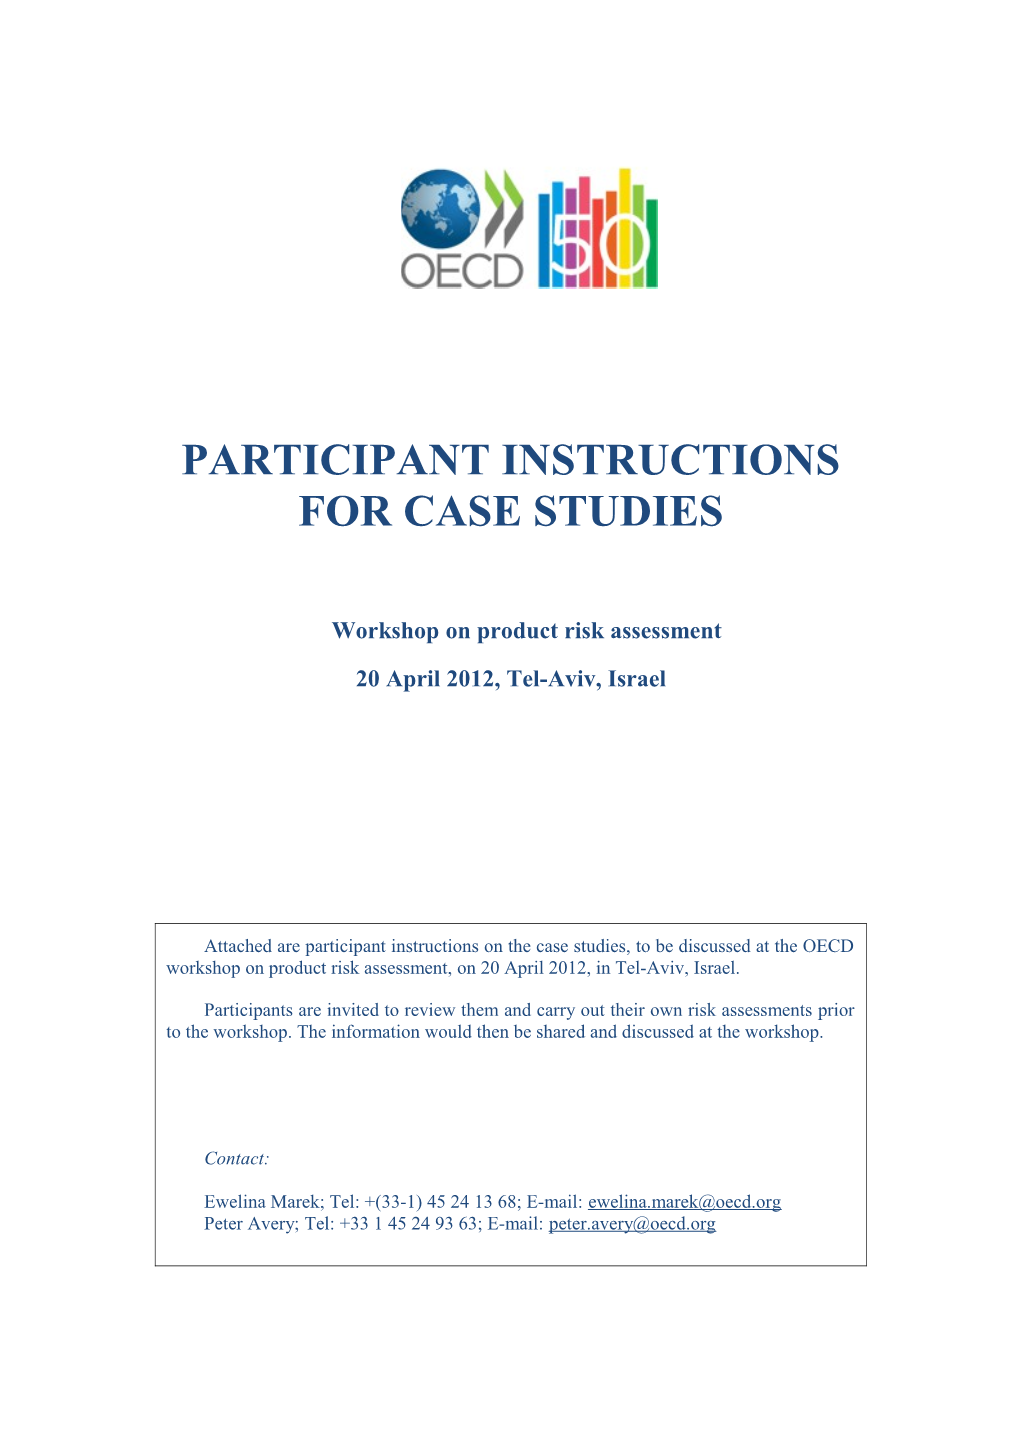 Participant Instructions for Case Studies